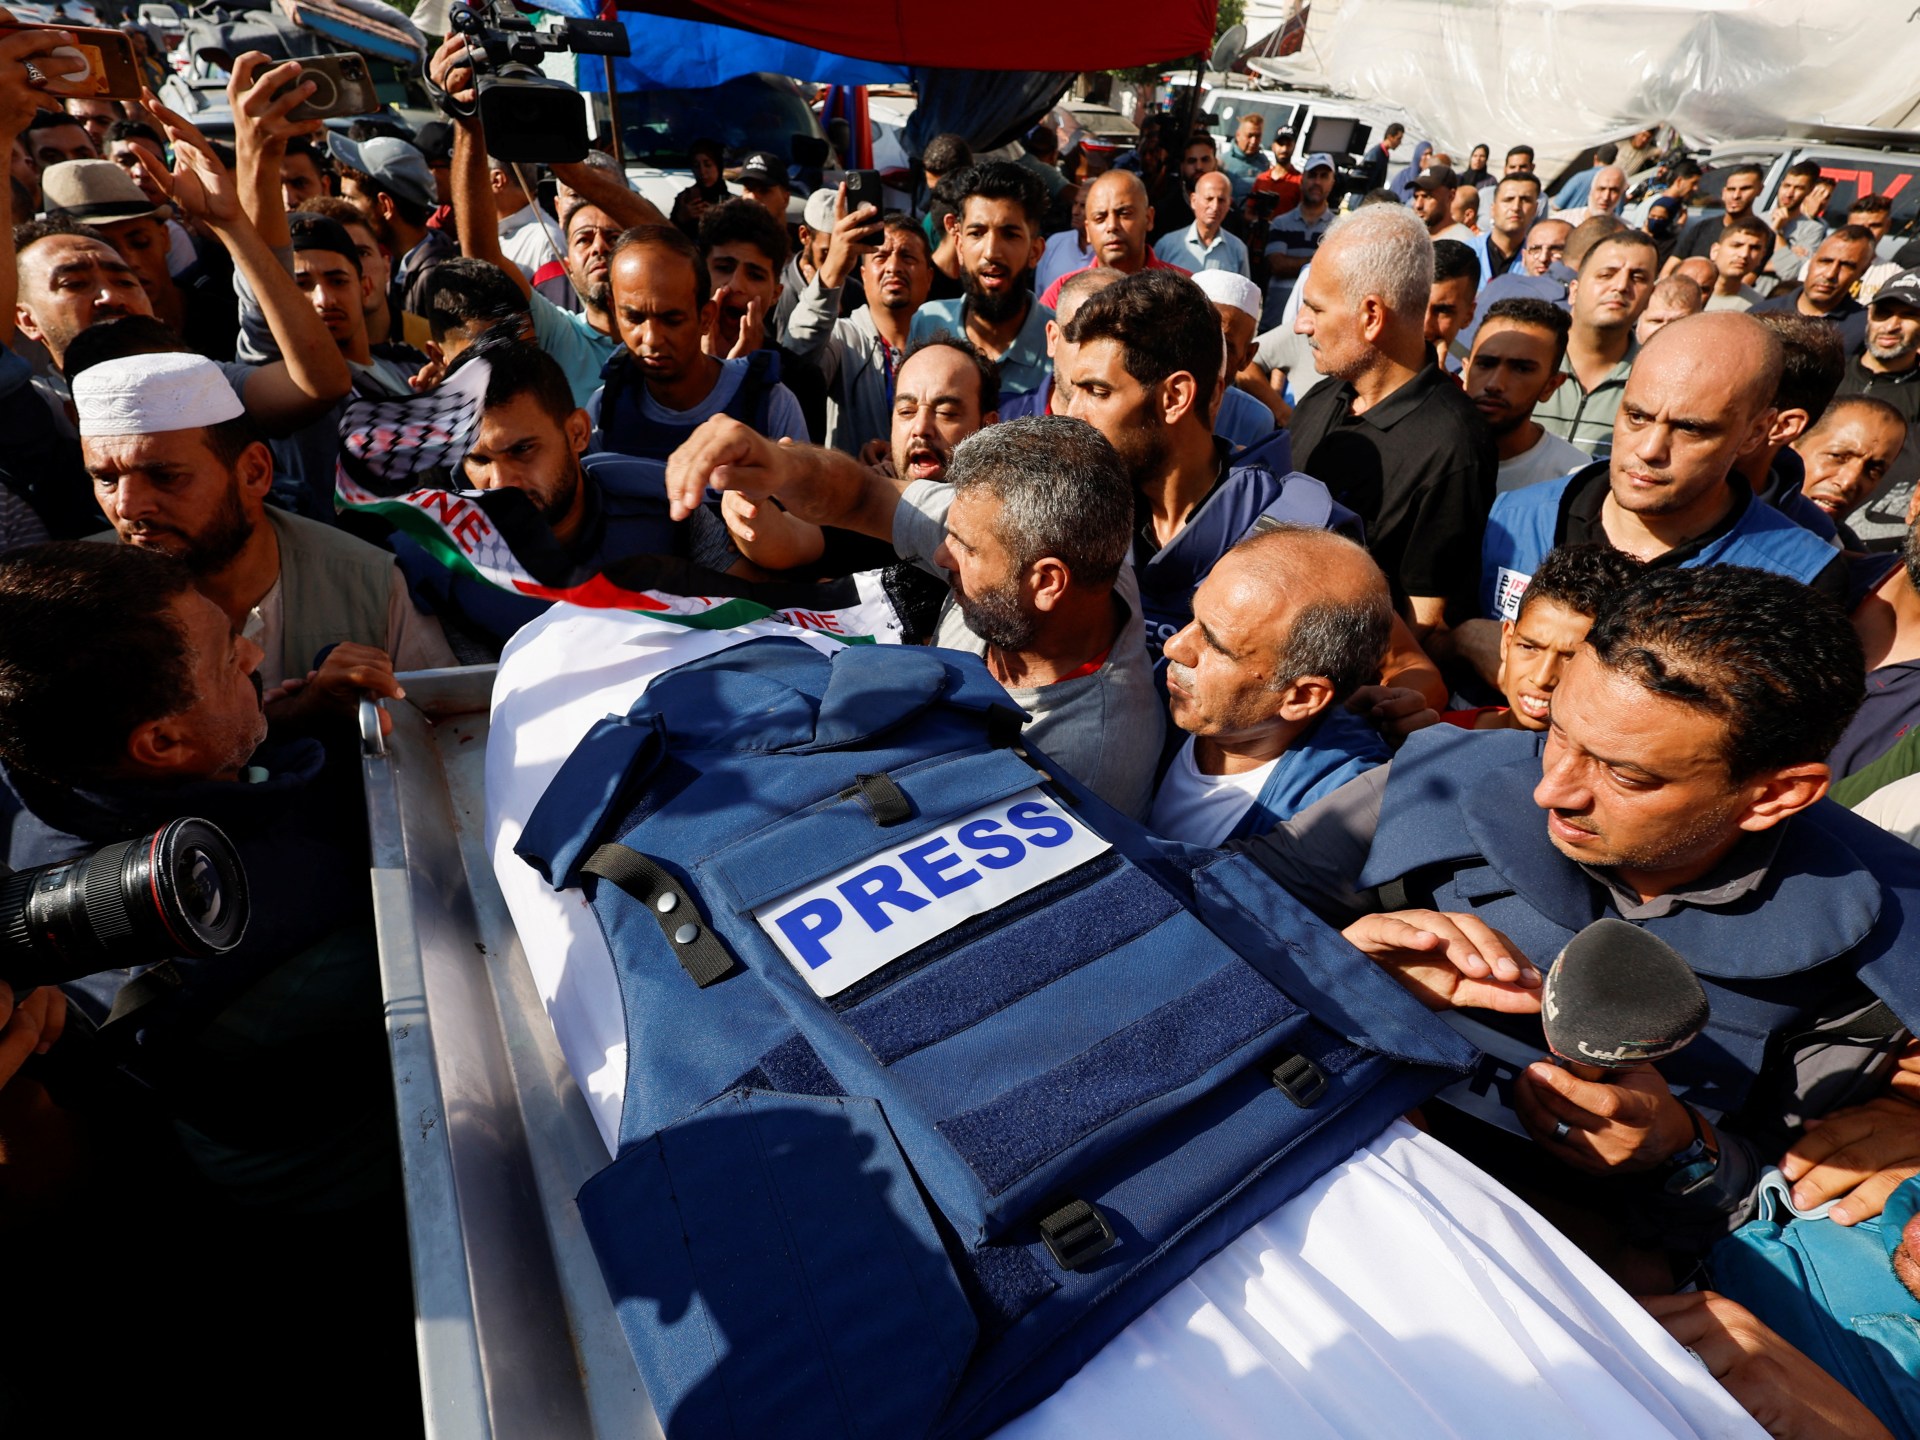 ارتفاع حصيلة الشهداء الصحفيين بغزة إلى 150 منذ 7 أكتوبر | أخبار – البوكس نيوز